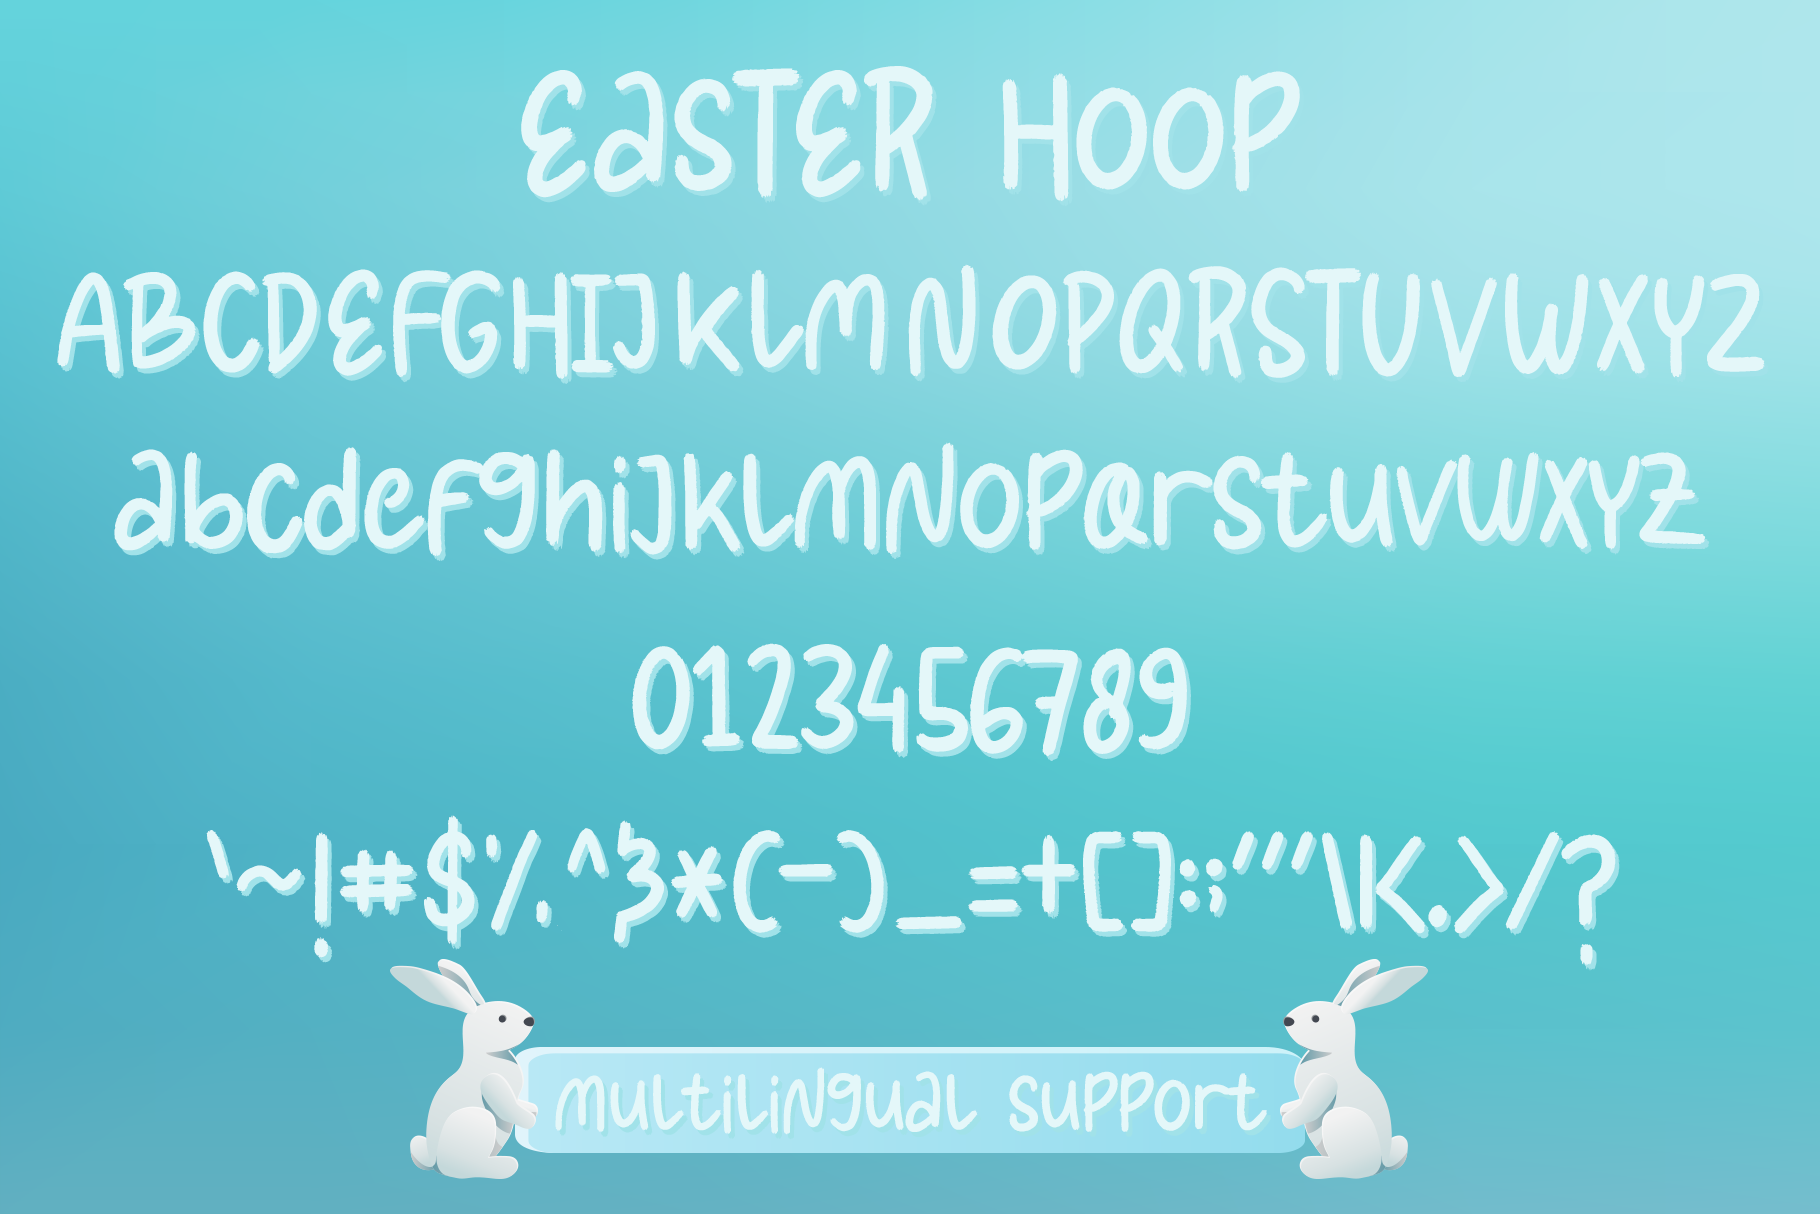 Easter Hoop